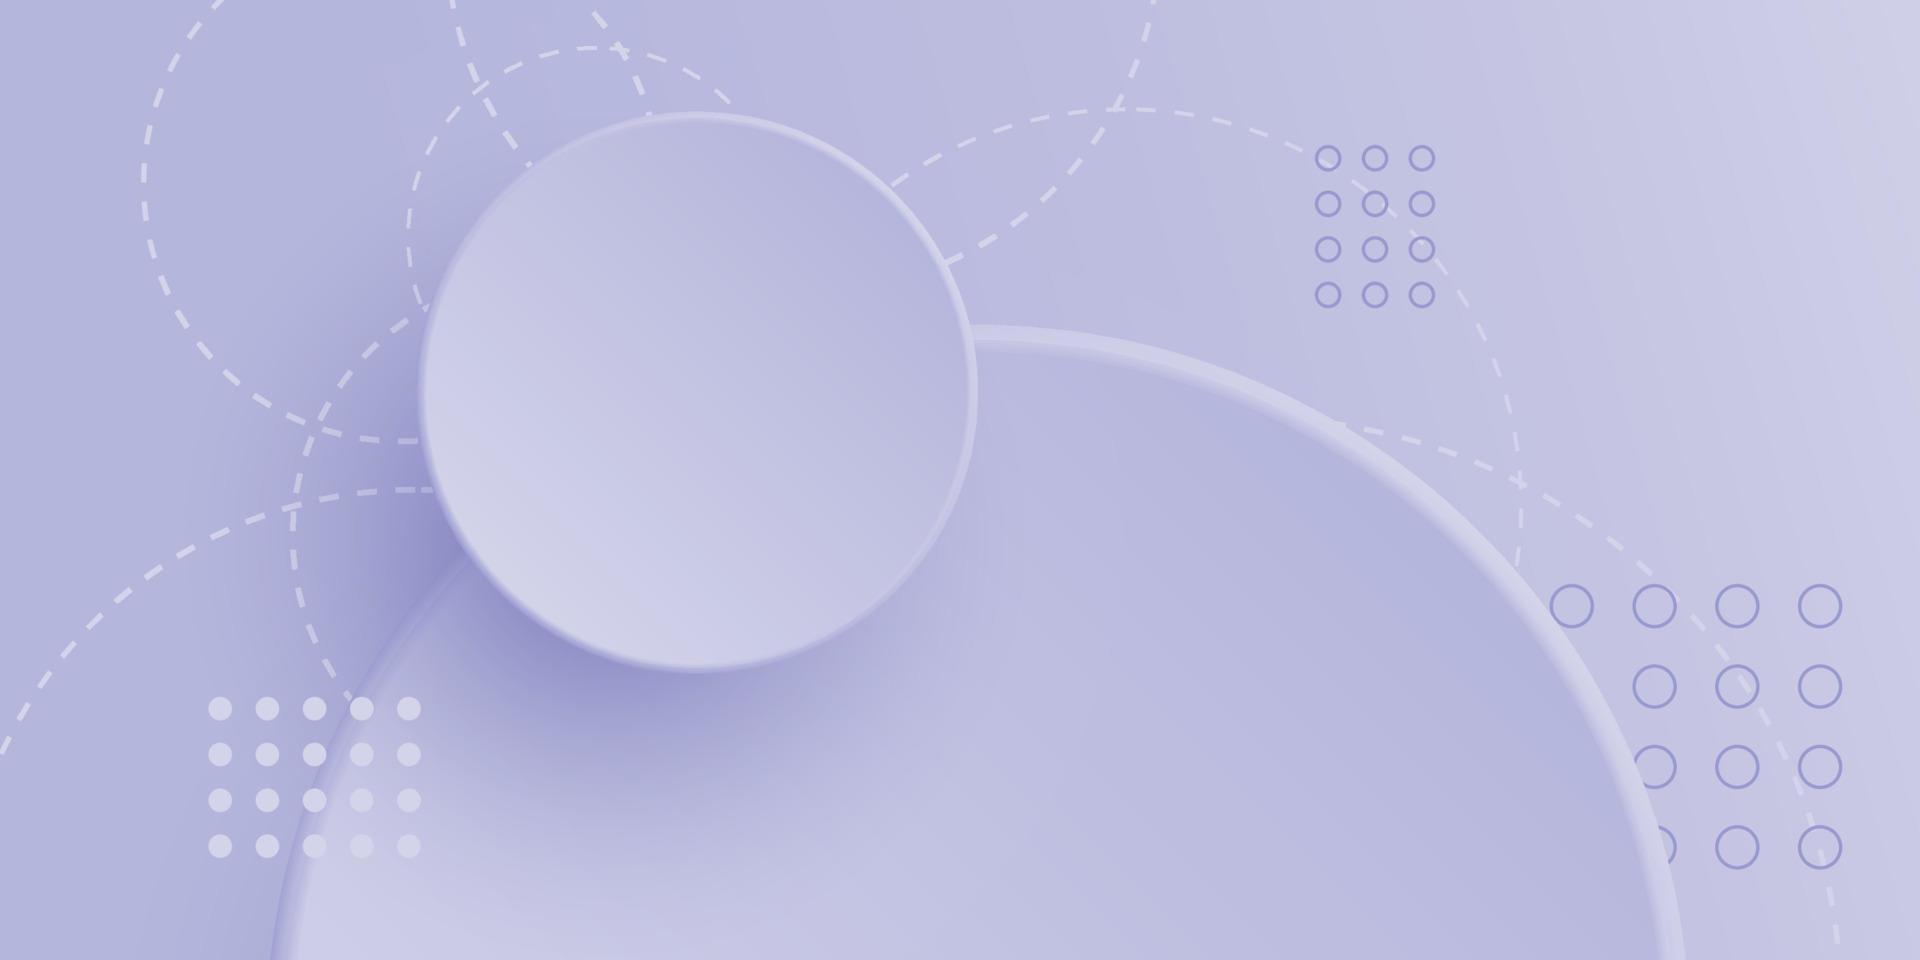 sfondo geometrico astratto con sfondo viola molto peri gradiente cerchio vettore